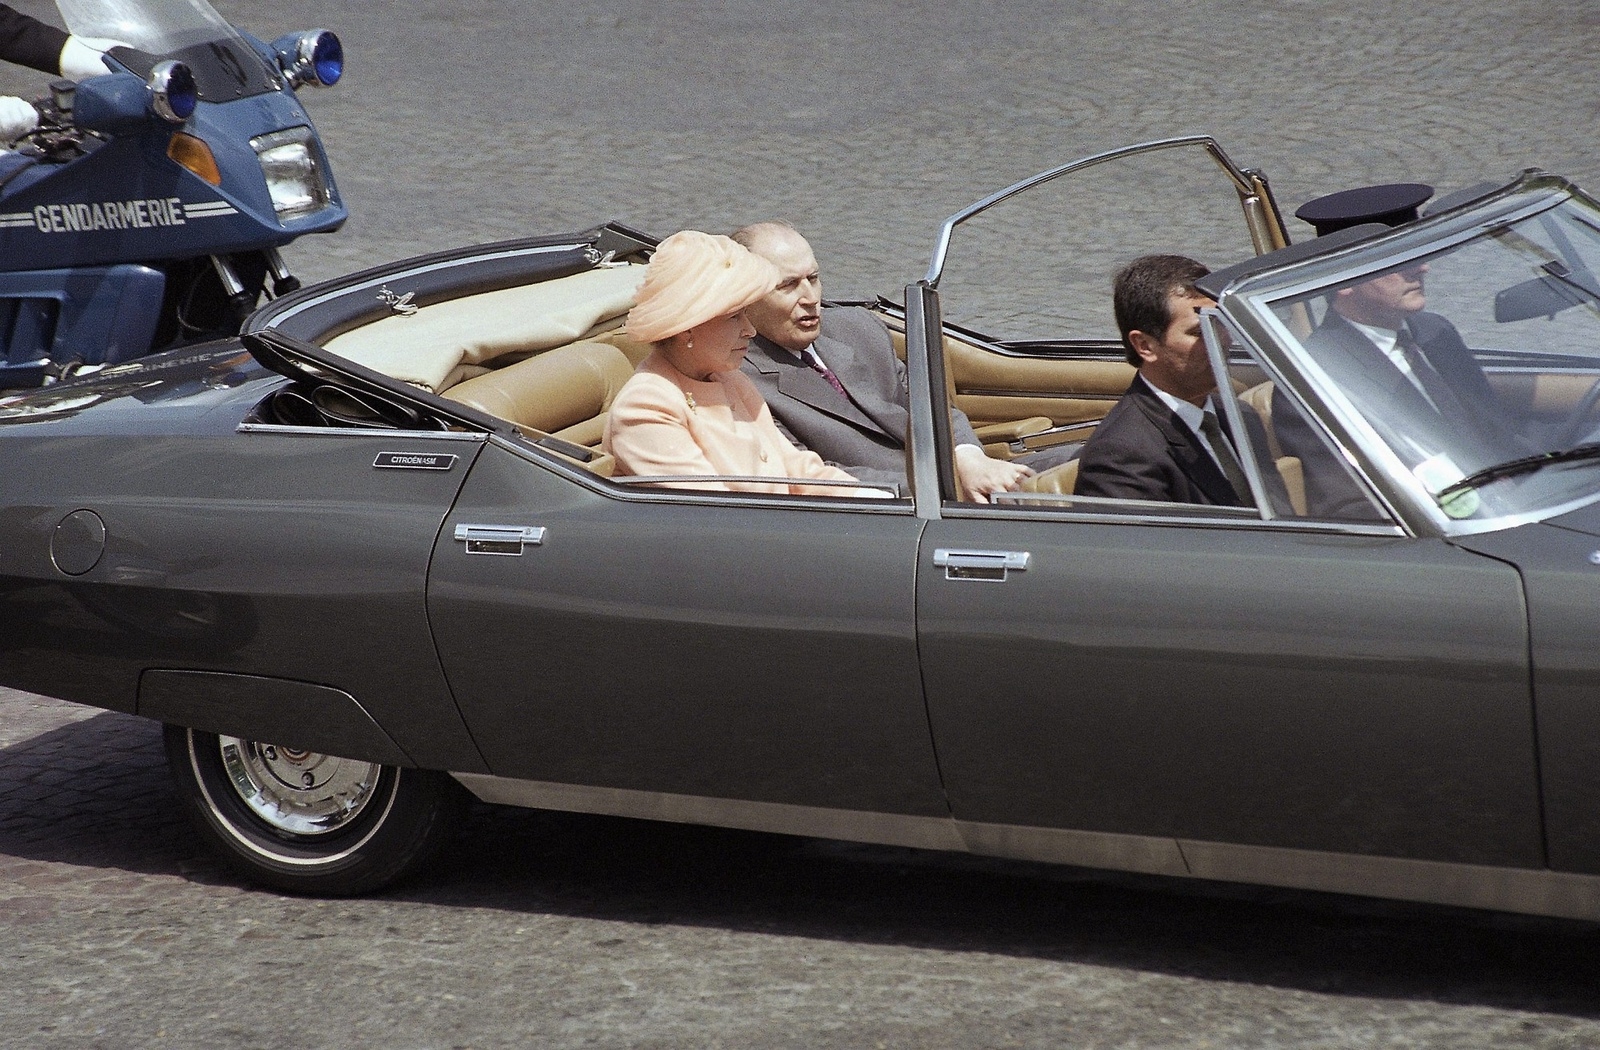 Den brittiska drottningen Elizabeth II åkte Citroën tillsammans med den dåvarande franske presidenten Francois Mitterrand under ett statsbesök 1992. Foto: Laurent Rebours/AP/TT